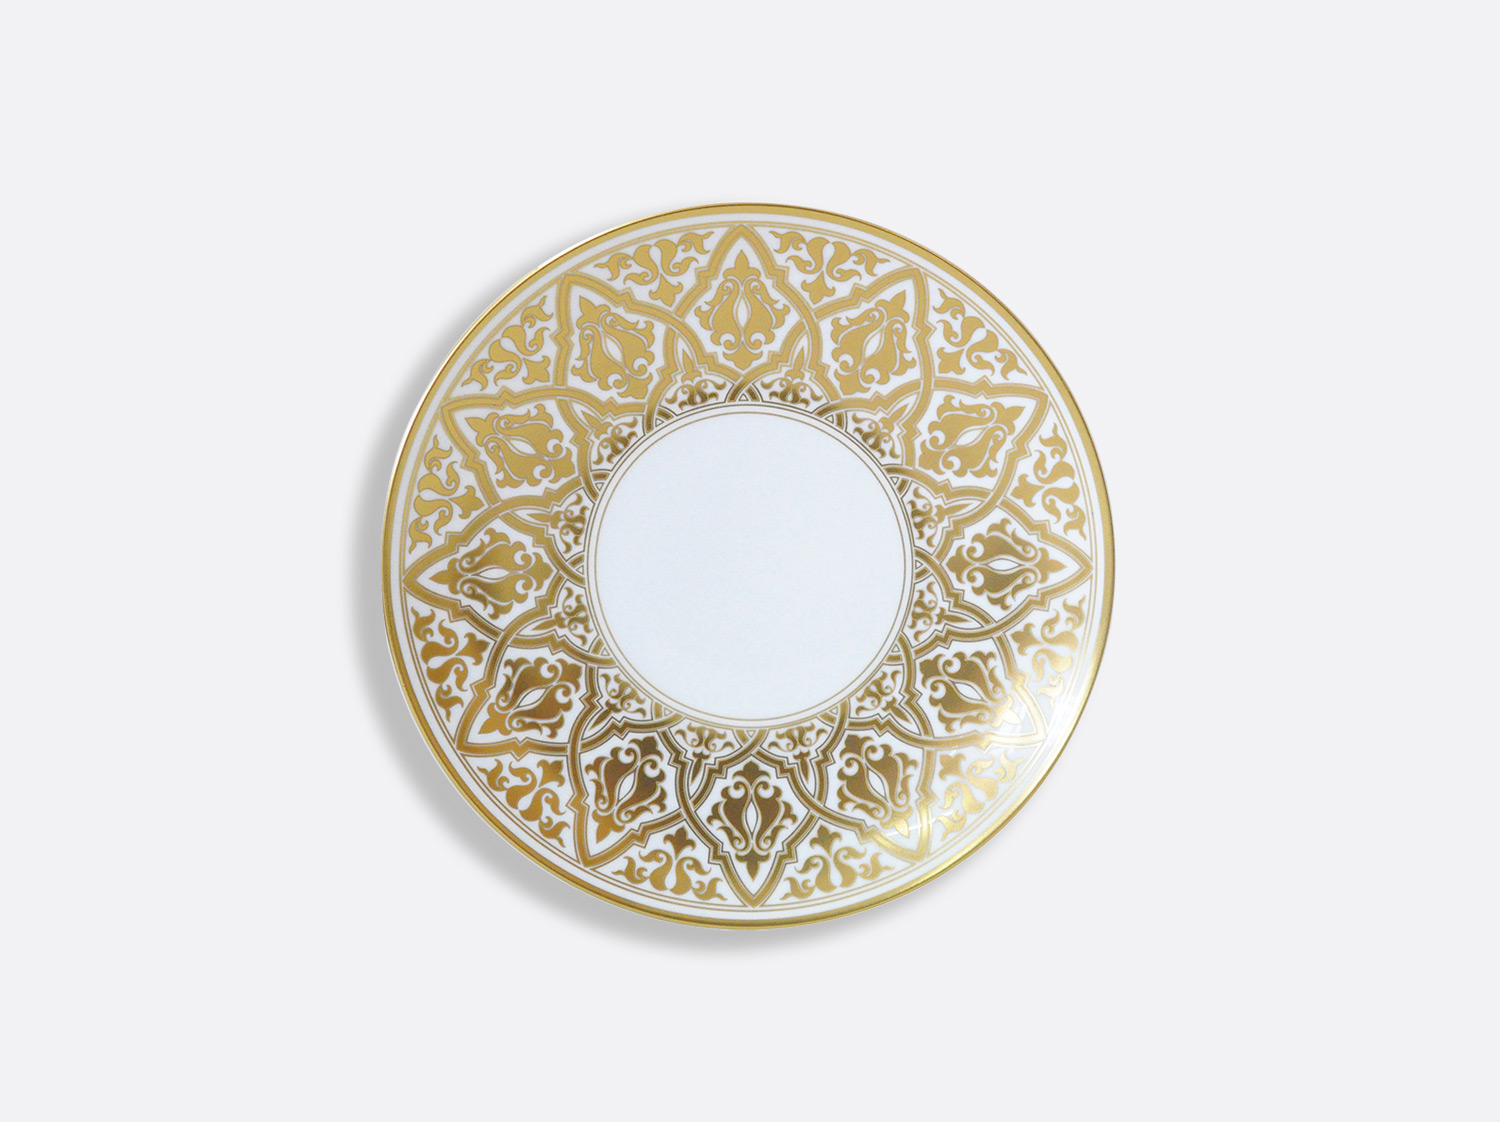 Assiette à dessert 21 cm en porcelaine de la collection Venise Bernardaud